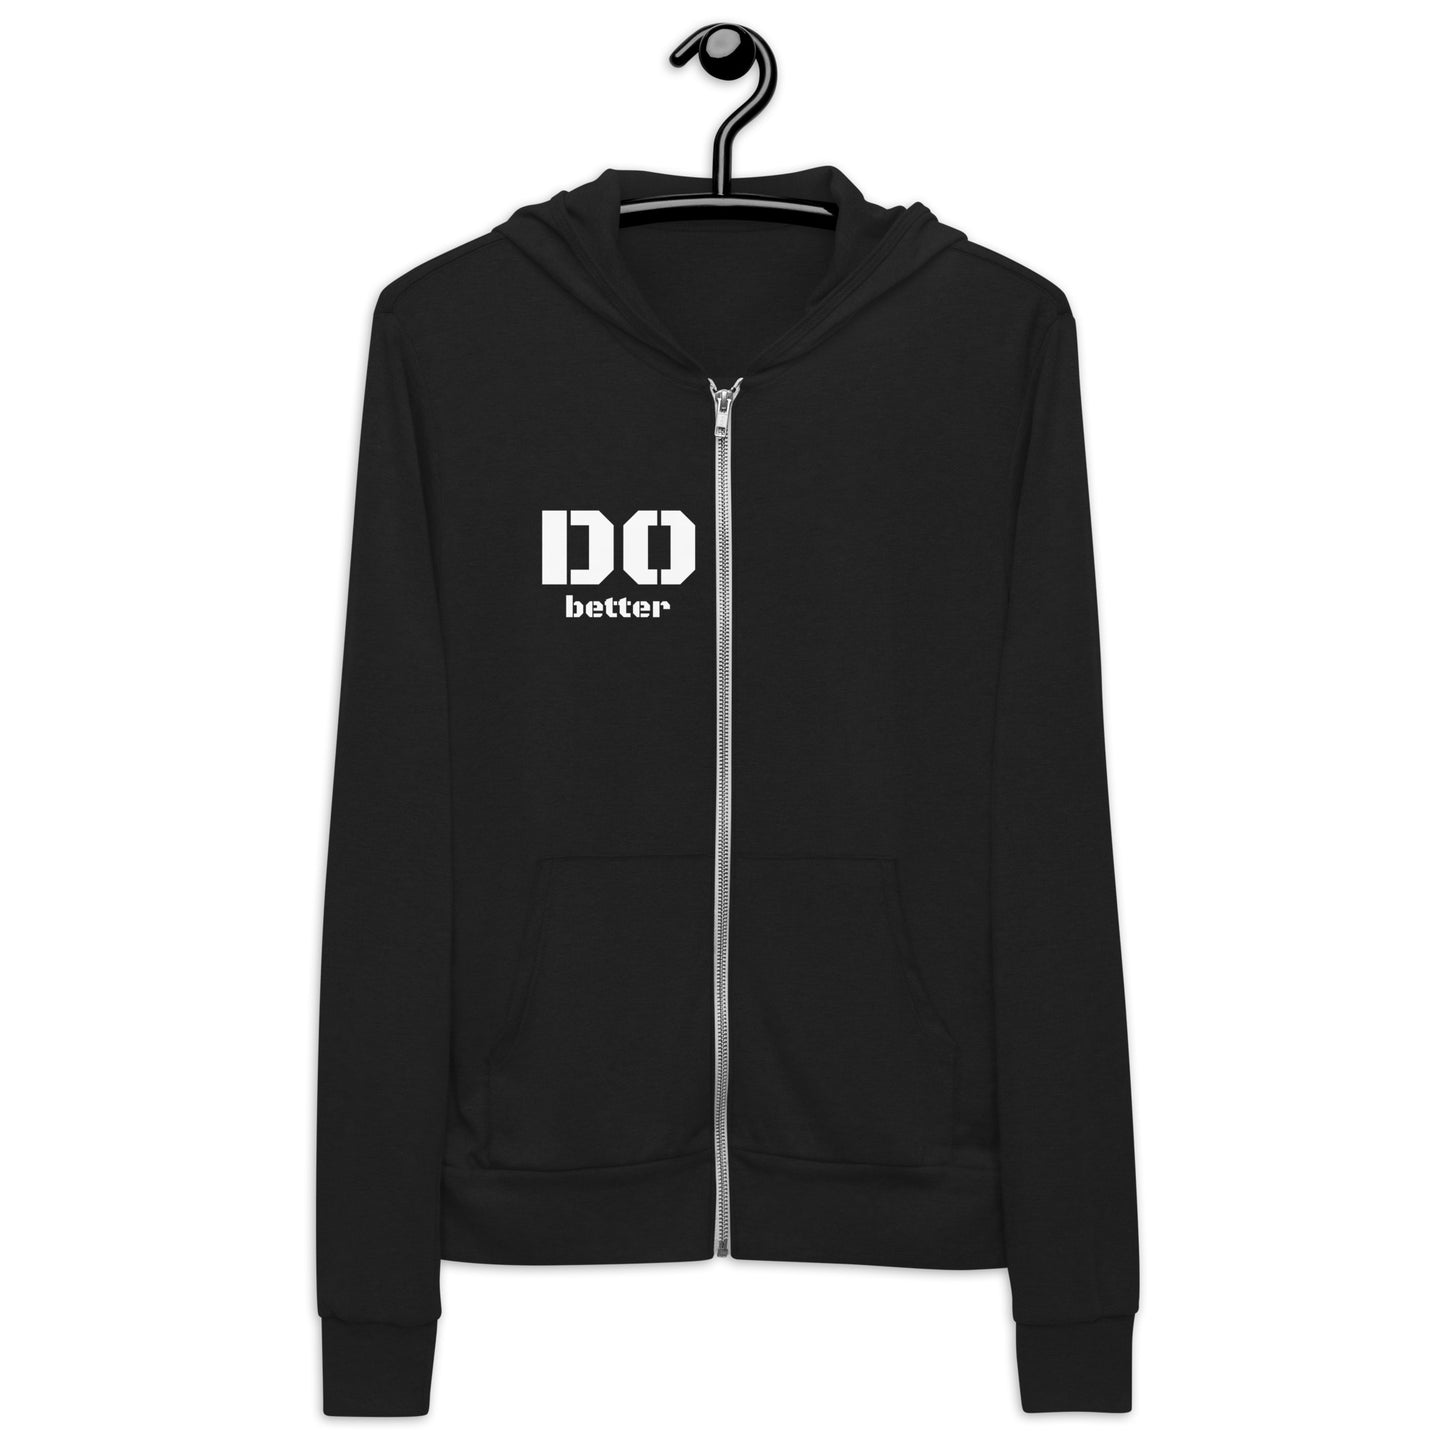 DObetter hoodie